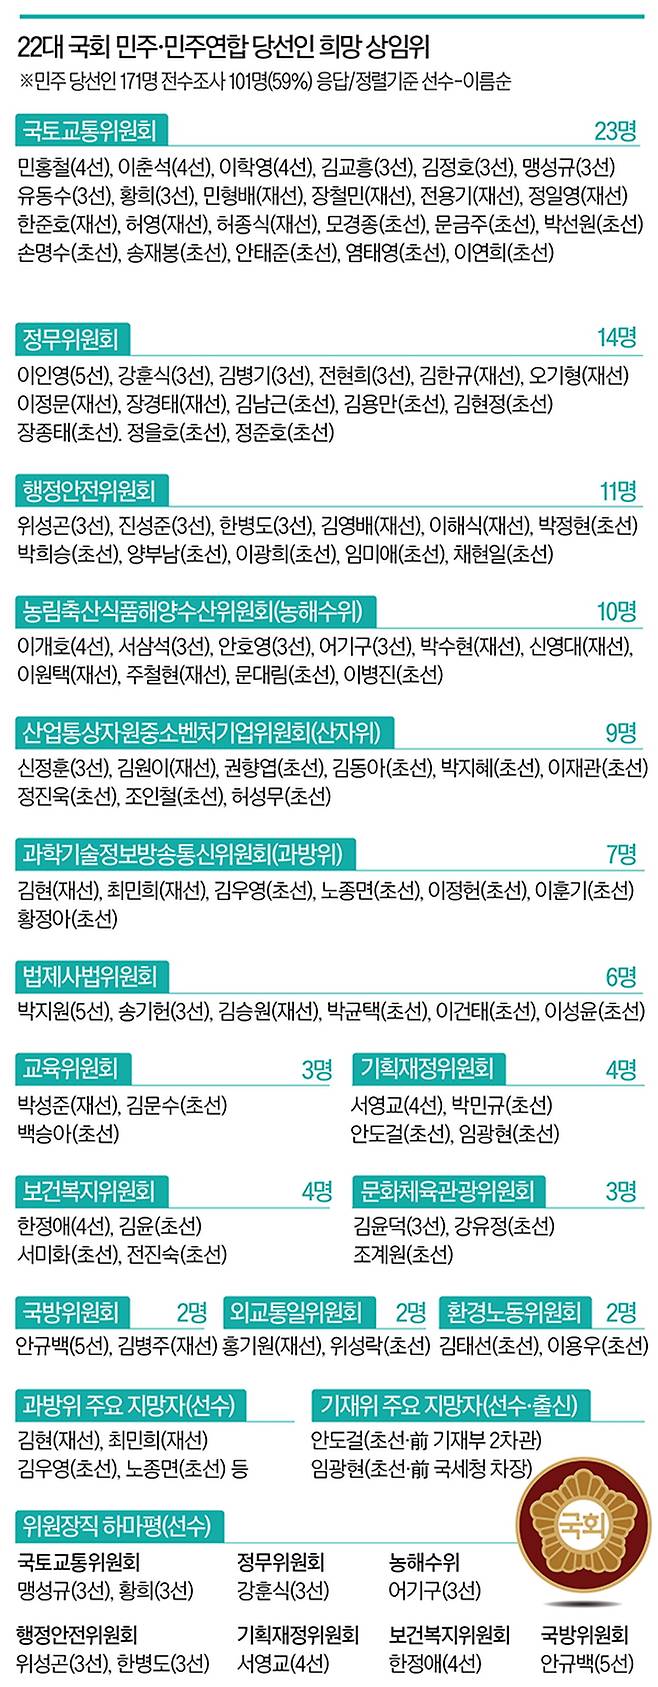 한국경제신문은 더불어민주당 의원 101명을 대상으로 22대 국회 희망 상임위를 전수조사했다.